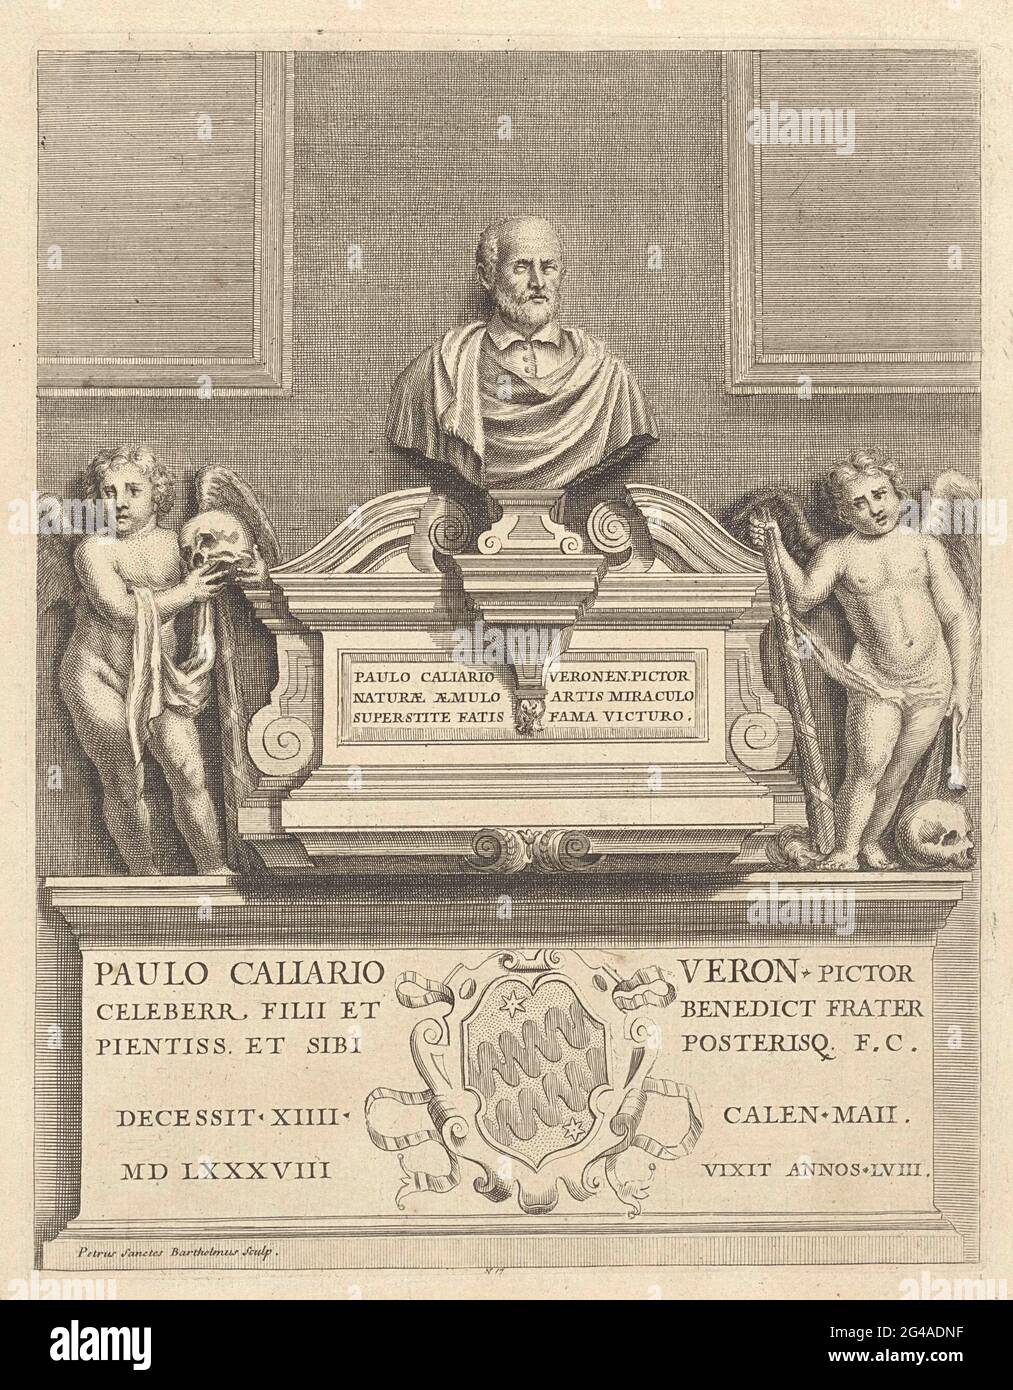 Tombe de Paolo Veronese. Tombe du peintre Paolo Veronese avec portrait et deux putti. Dans le texte de sous-marge et un blason. Banque D'Images